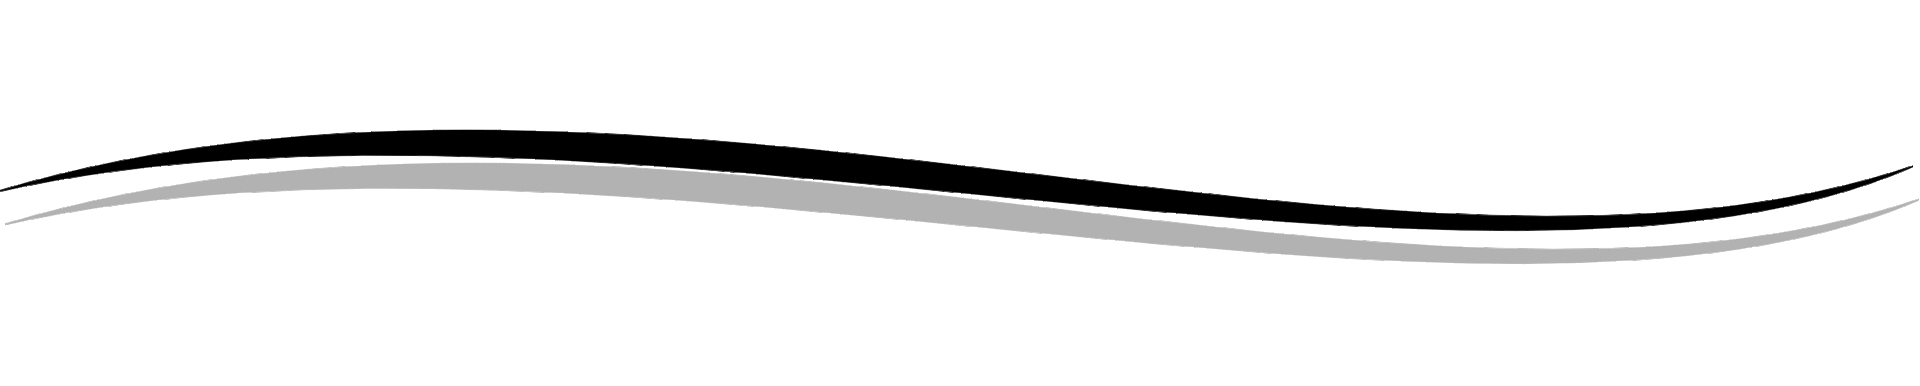 line divider clip art
